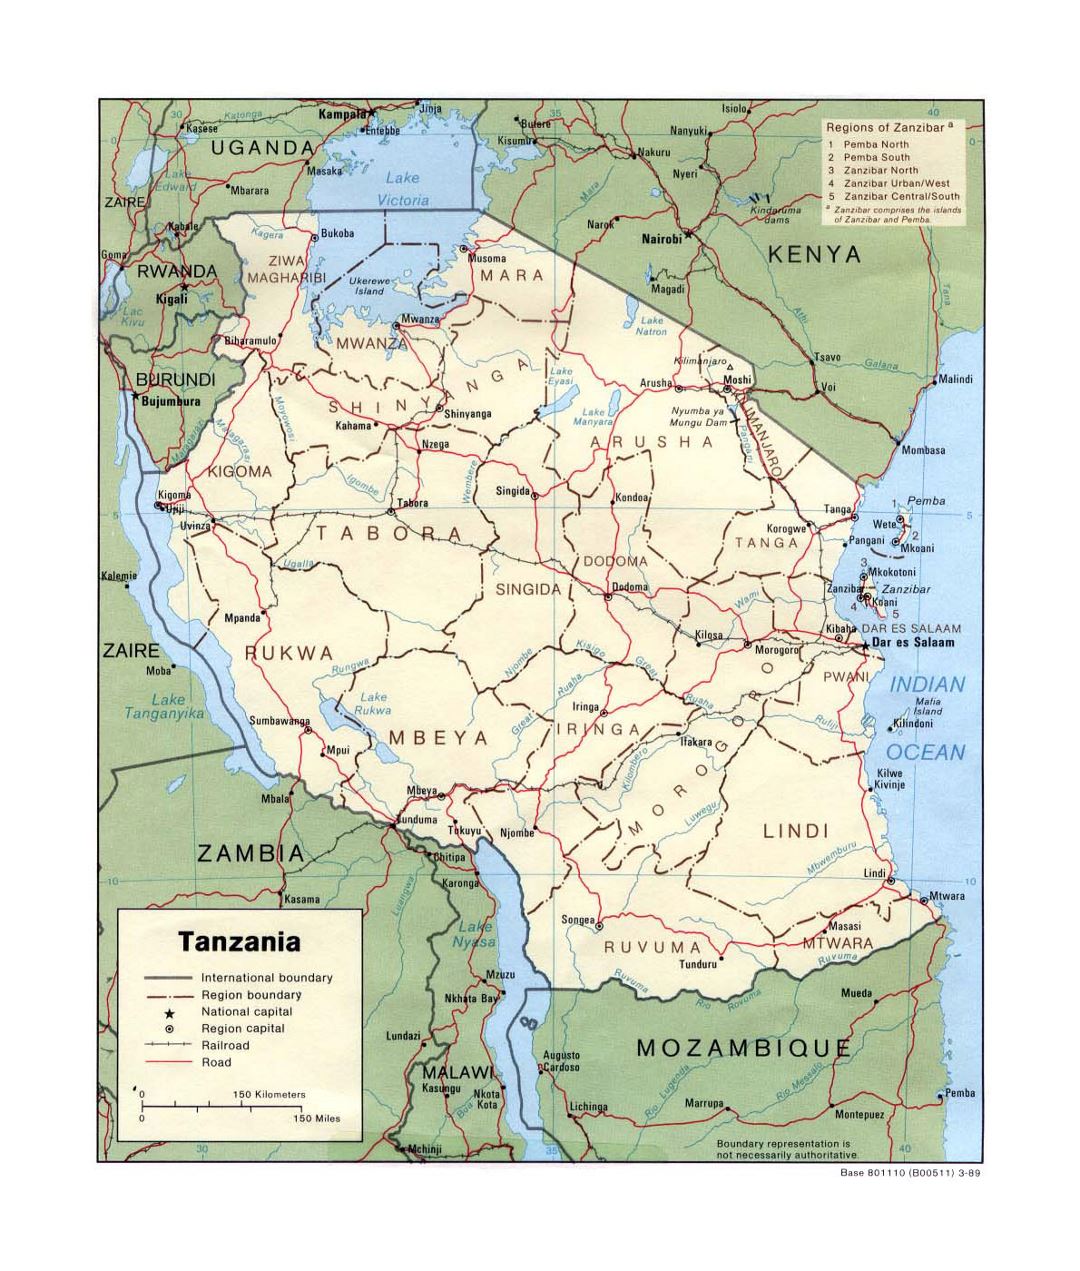 Детальная политическая и административная карта Танзании с дорогами, железными дорогами и крупными городами - 1989